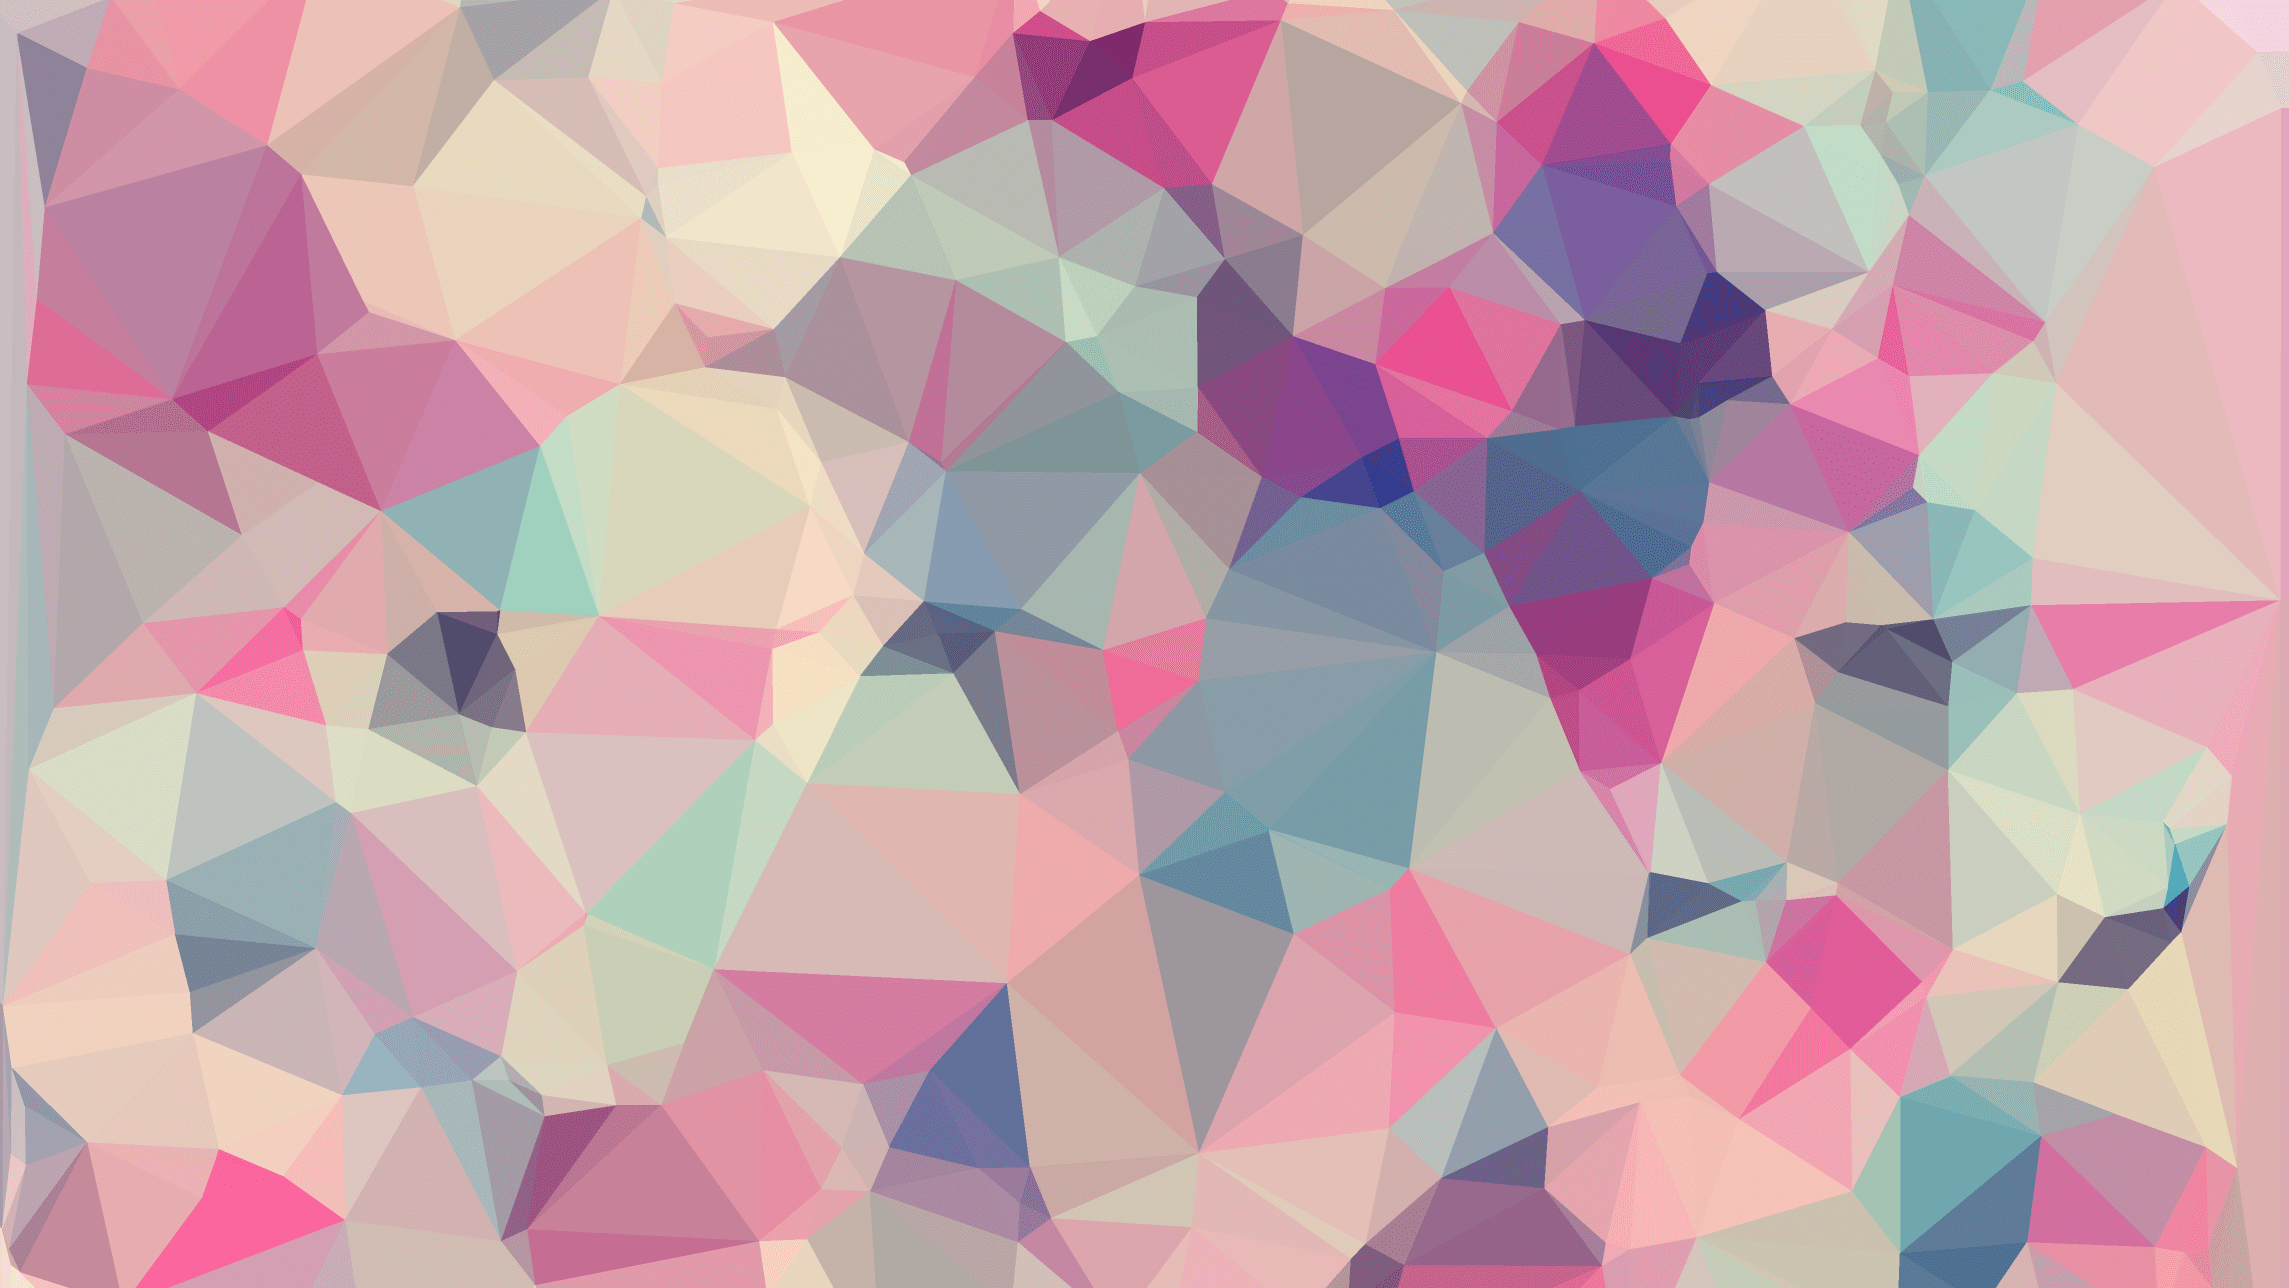 Pink Geometric Images  Free Download on Freepik